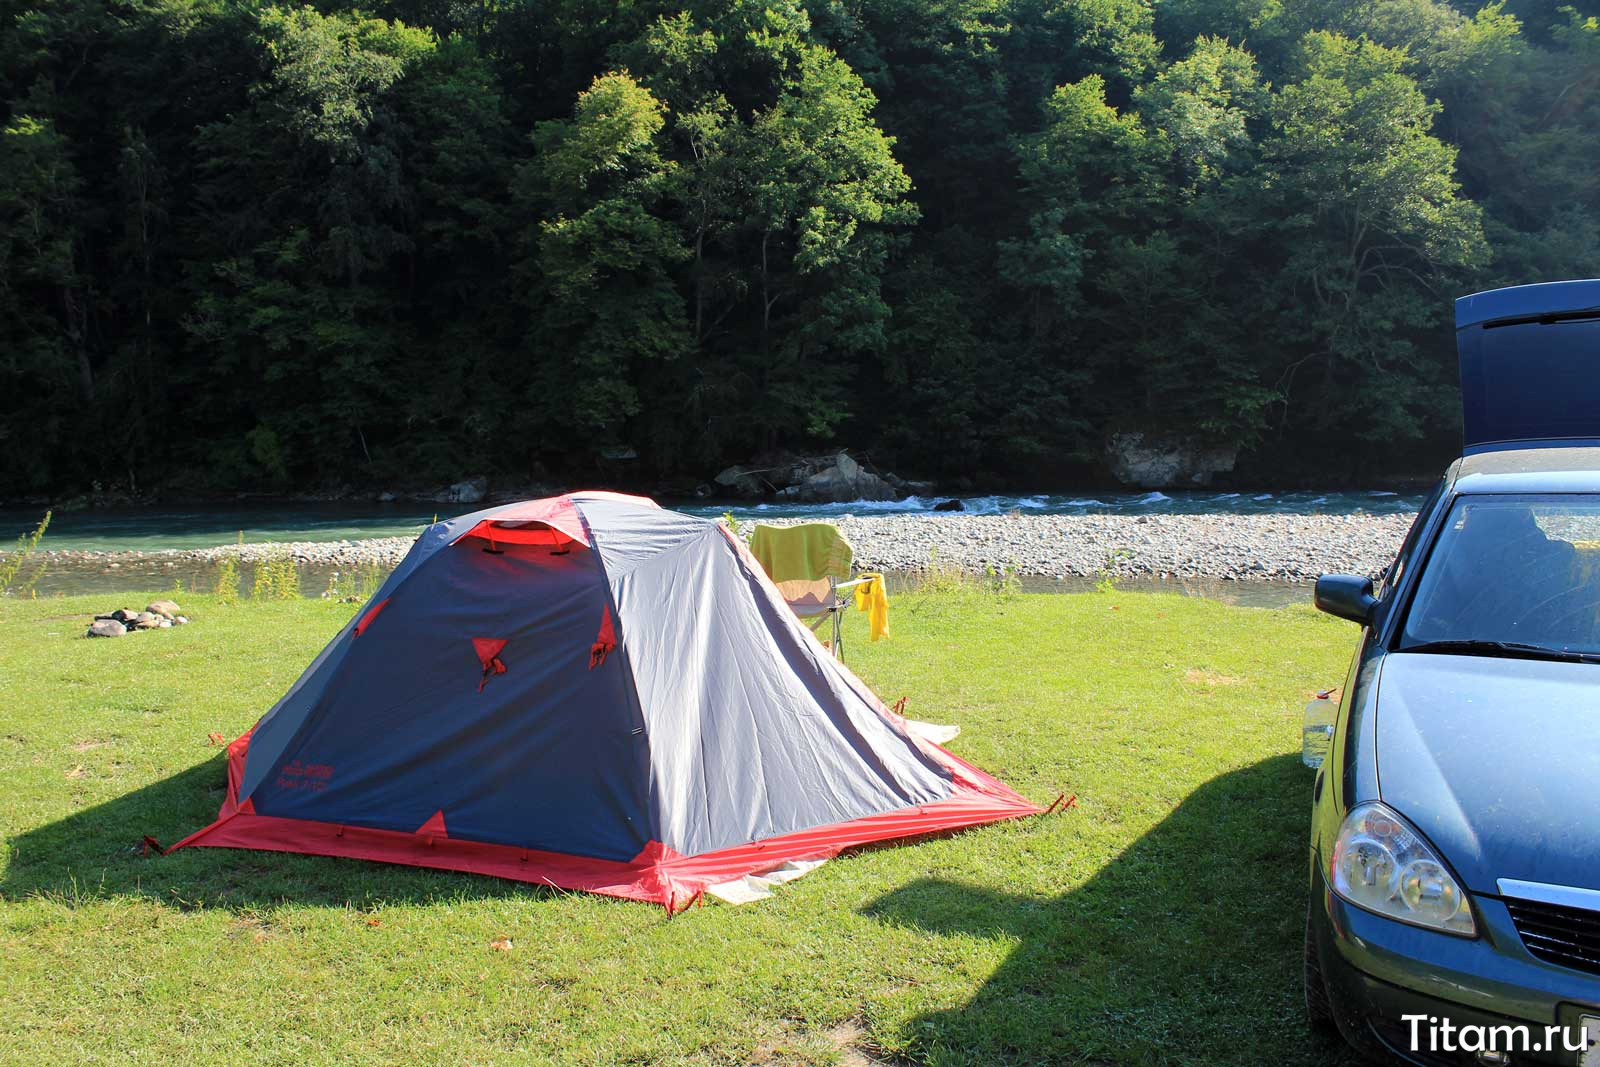 Изготовление самодельных палаток для отдыха - советы и идеи